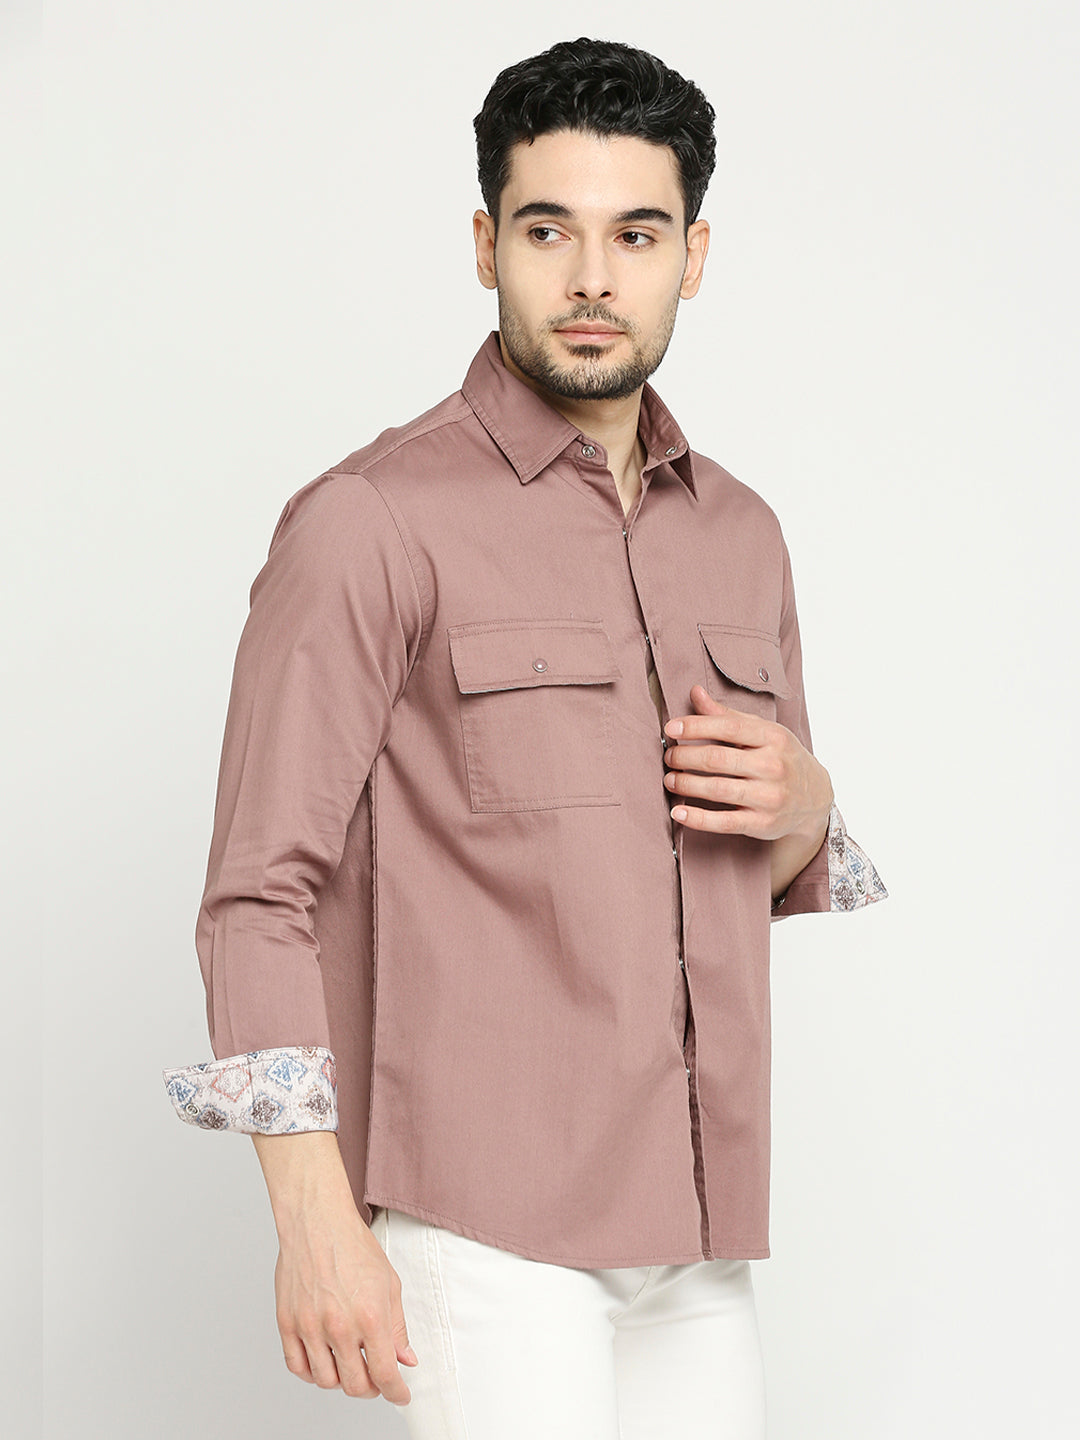 Buy Blamblack Men'S Solid Full Sleeves Regular Fit Spread Collar Shirt